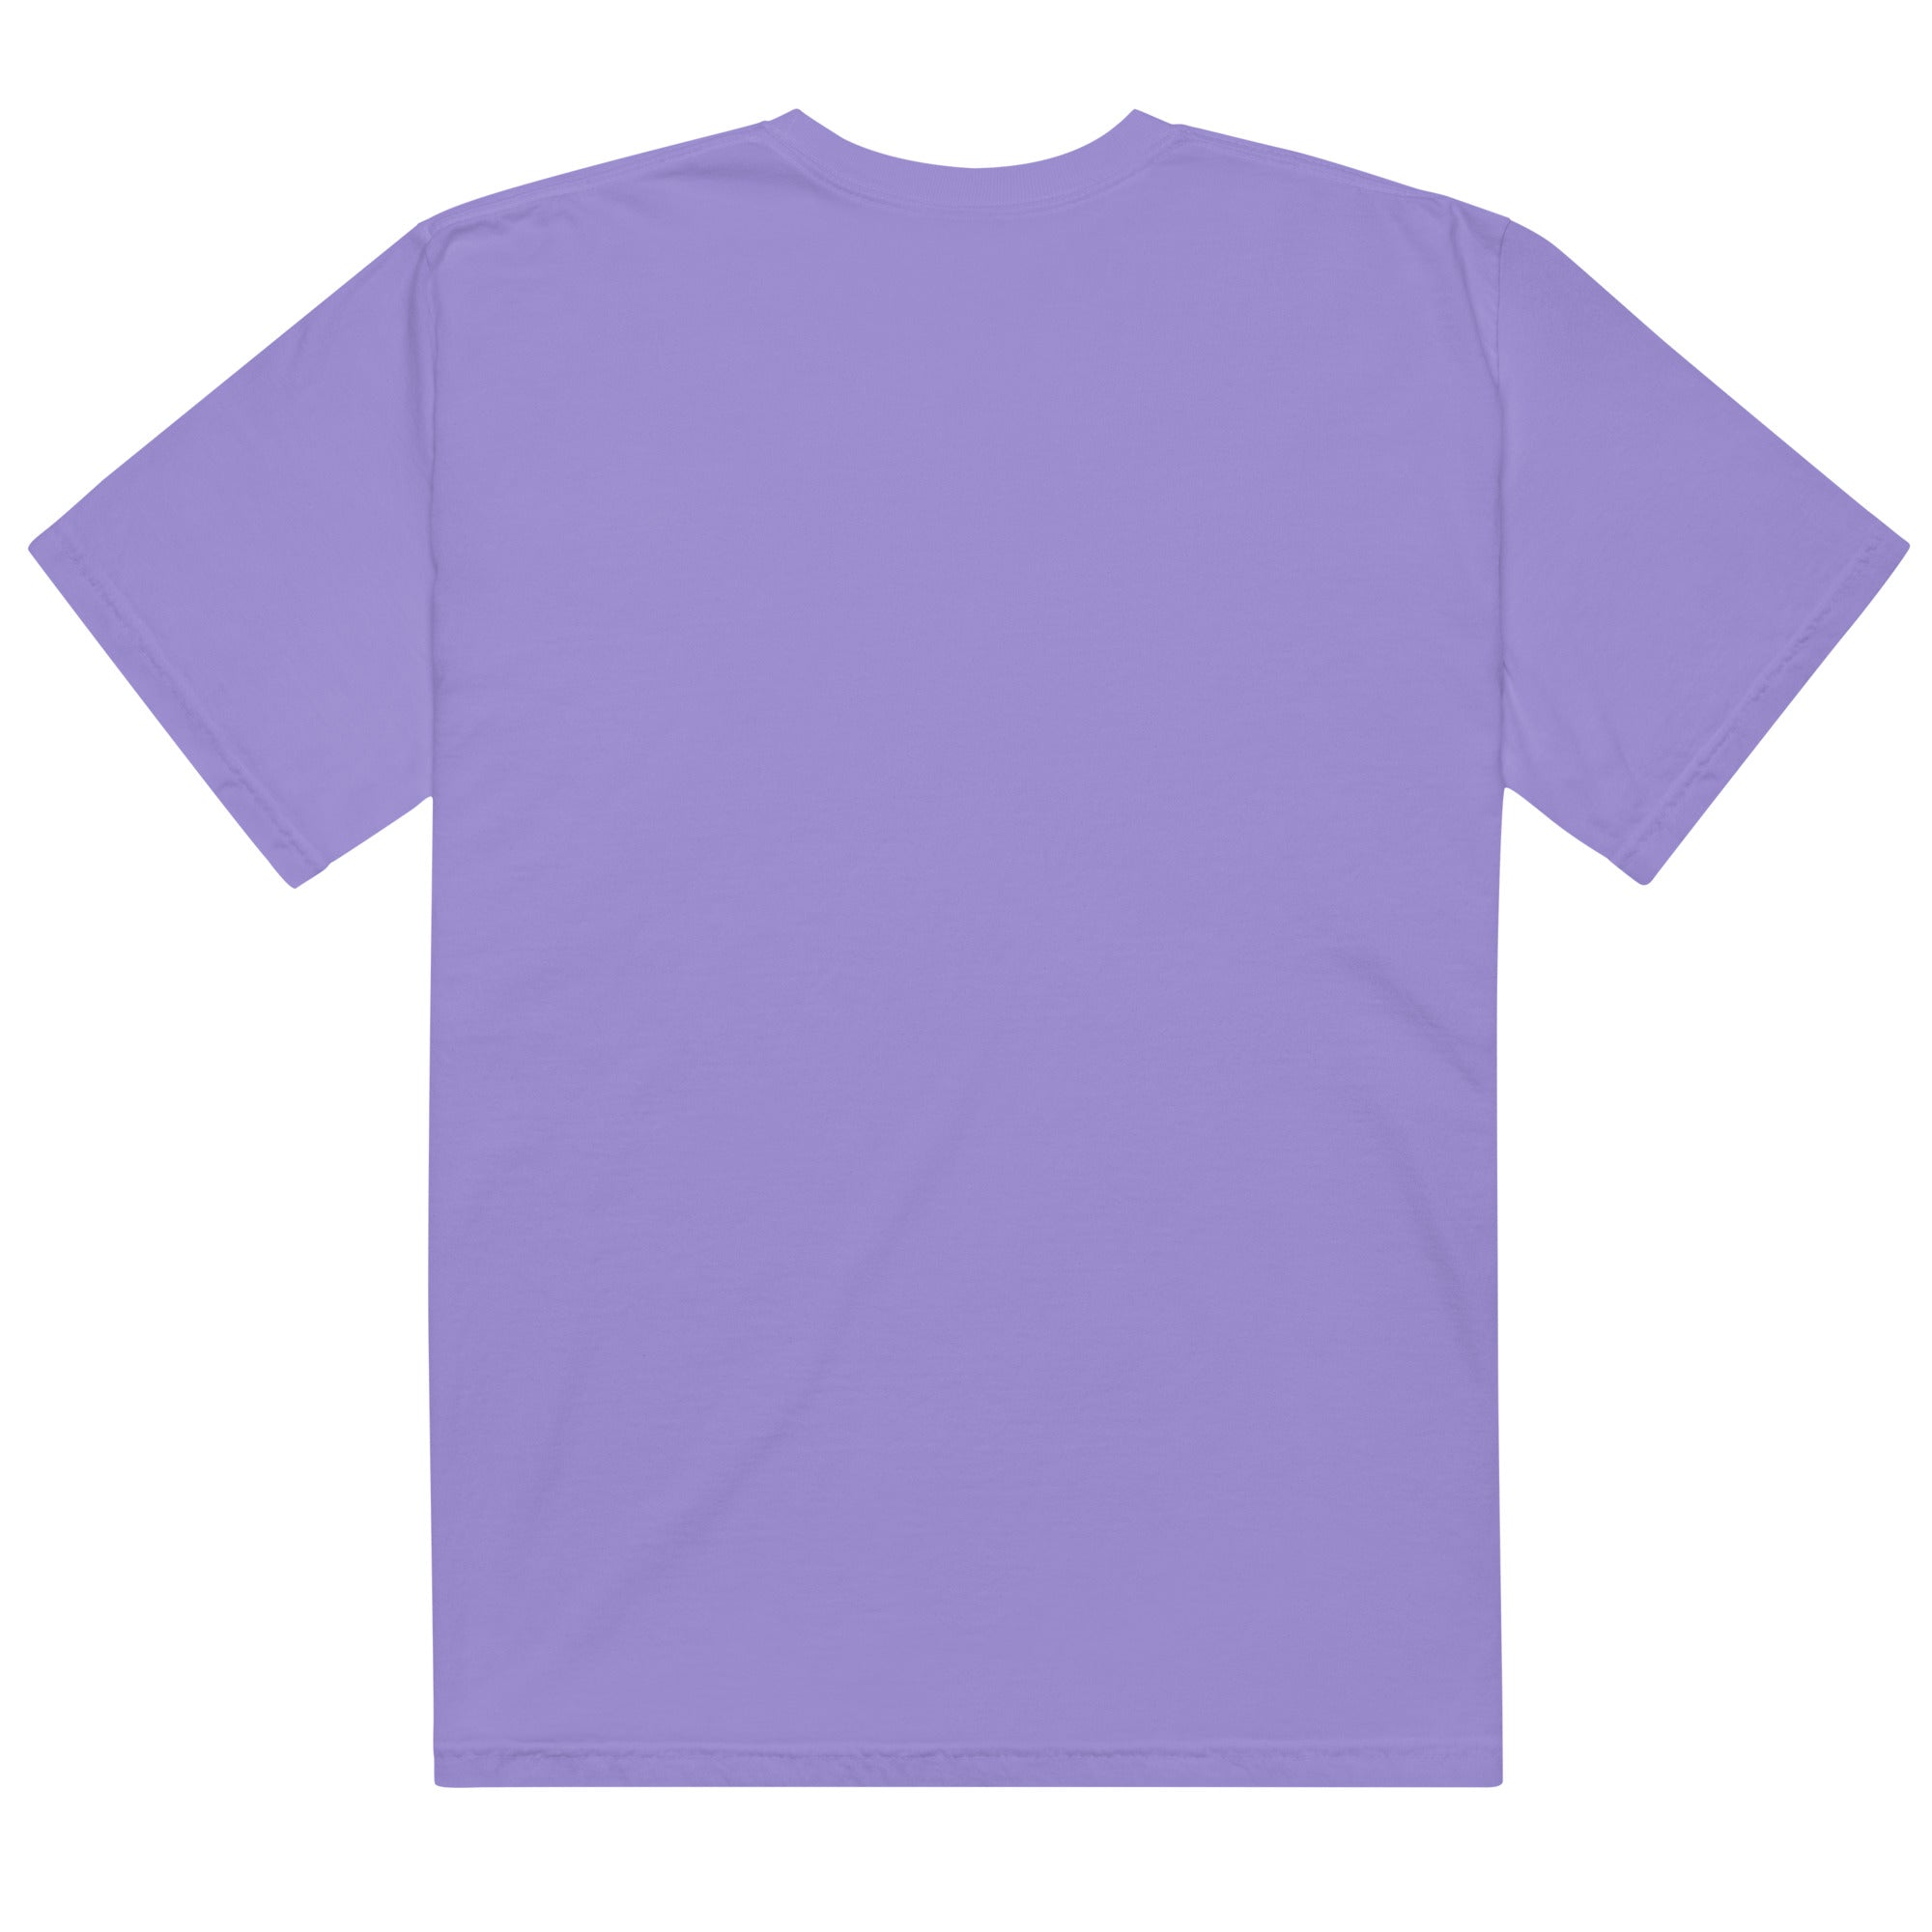 The beatles- Mens garment-dyed heavyweight t-shirt